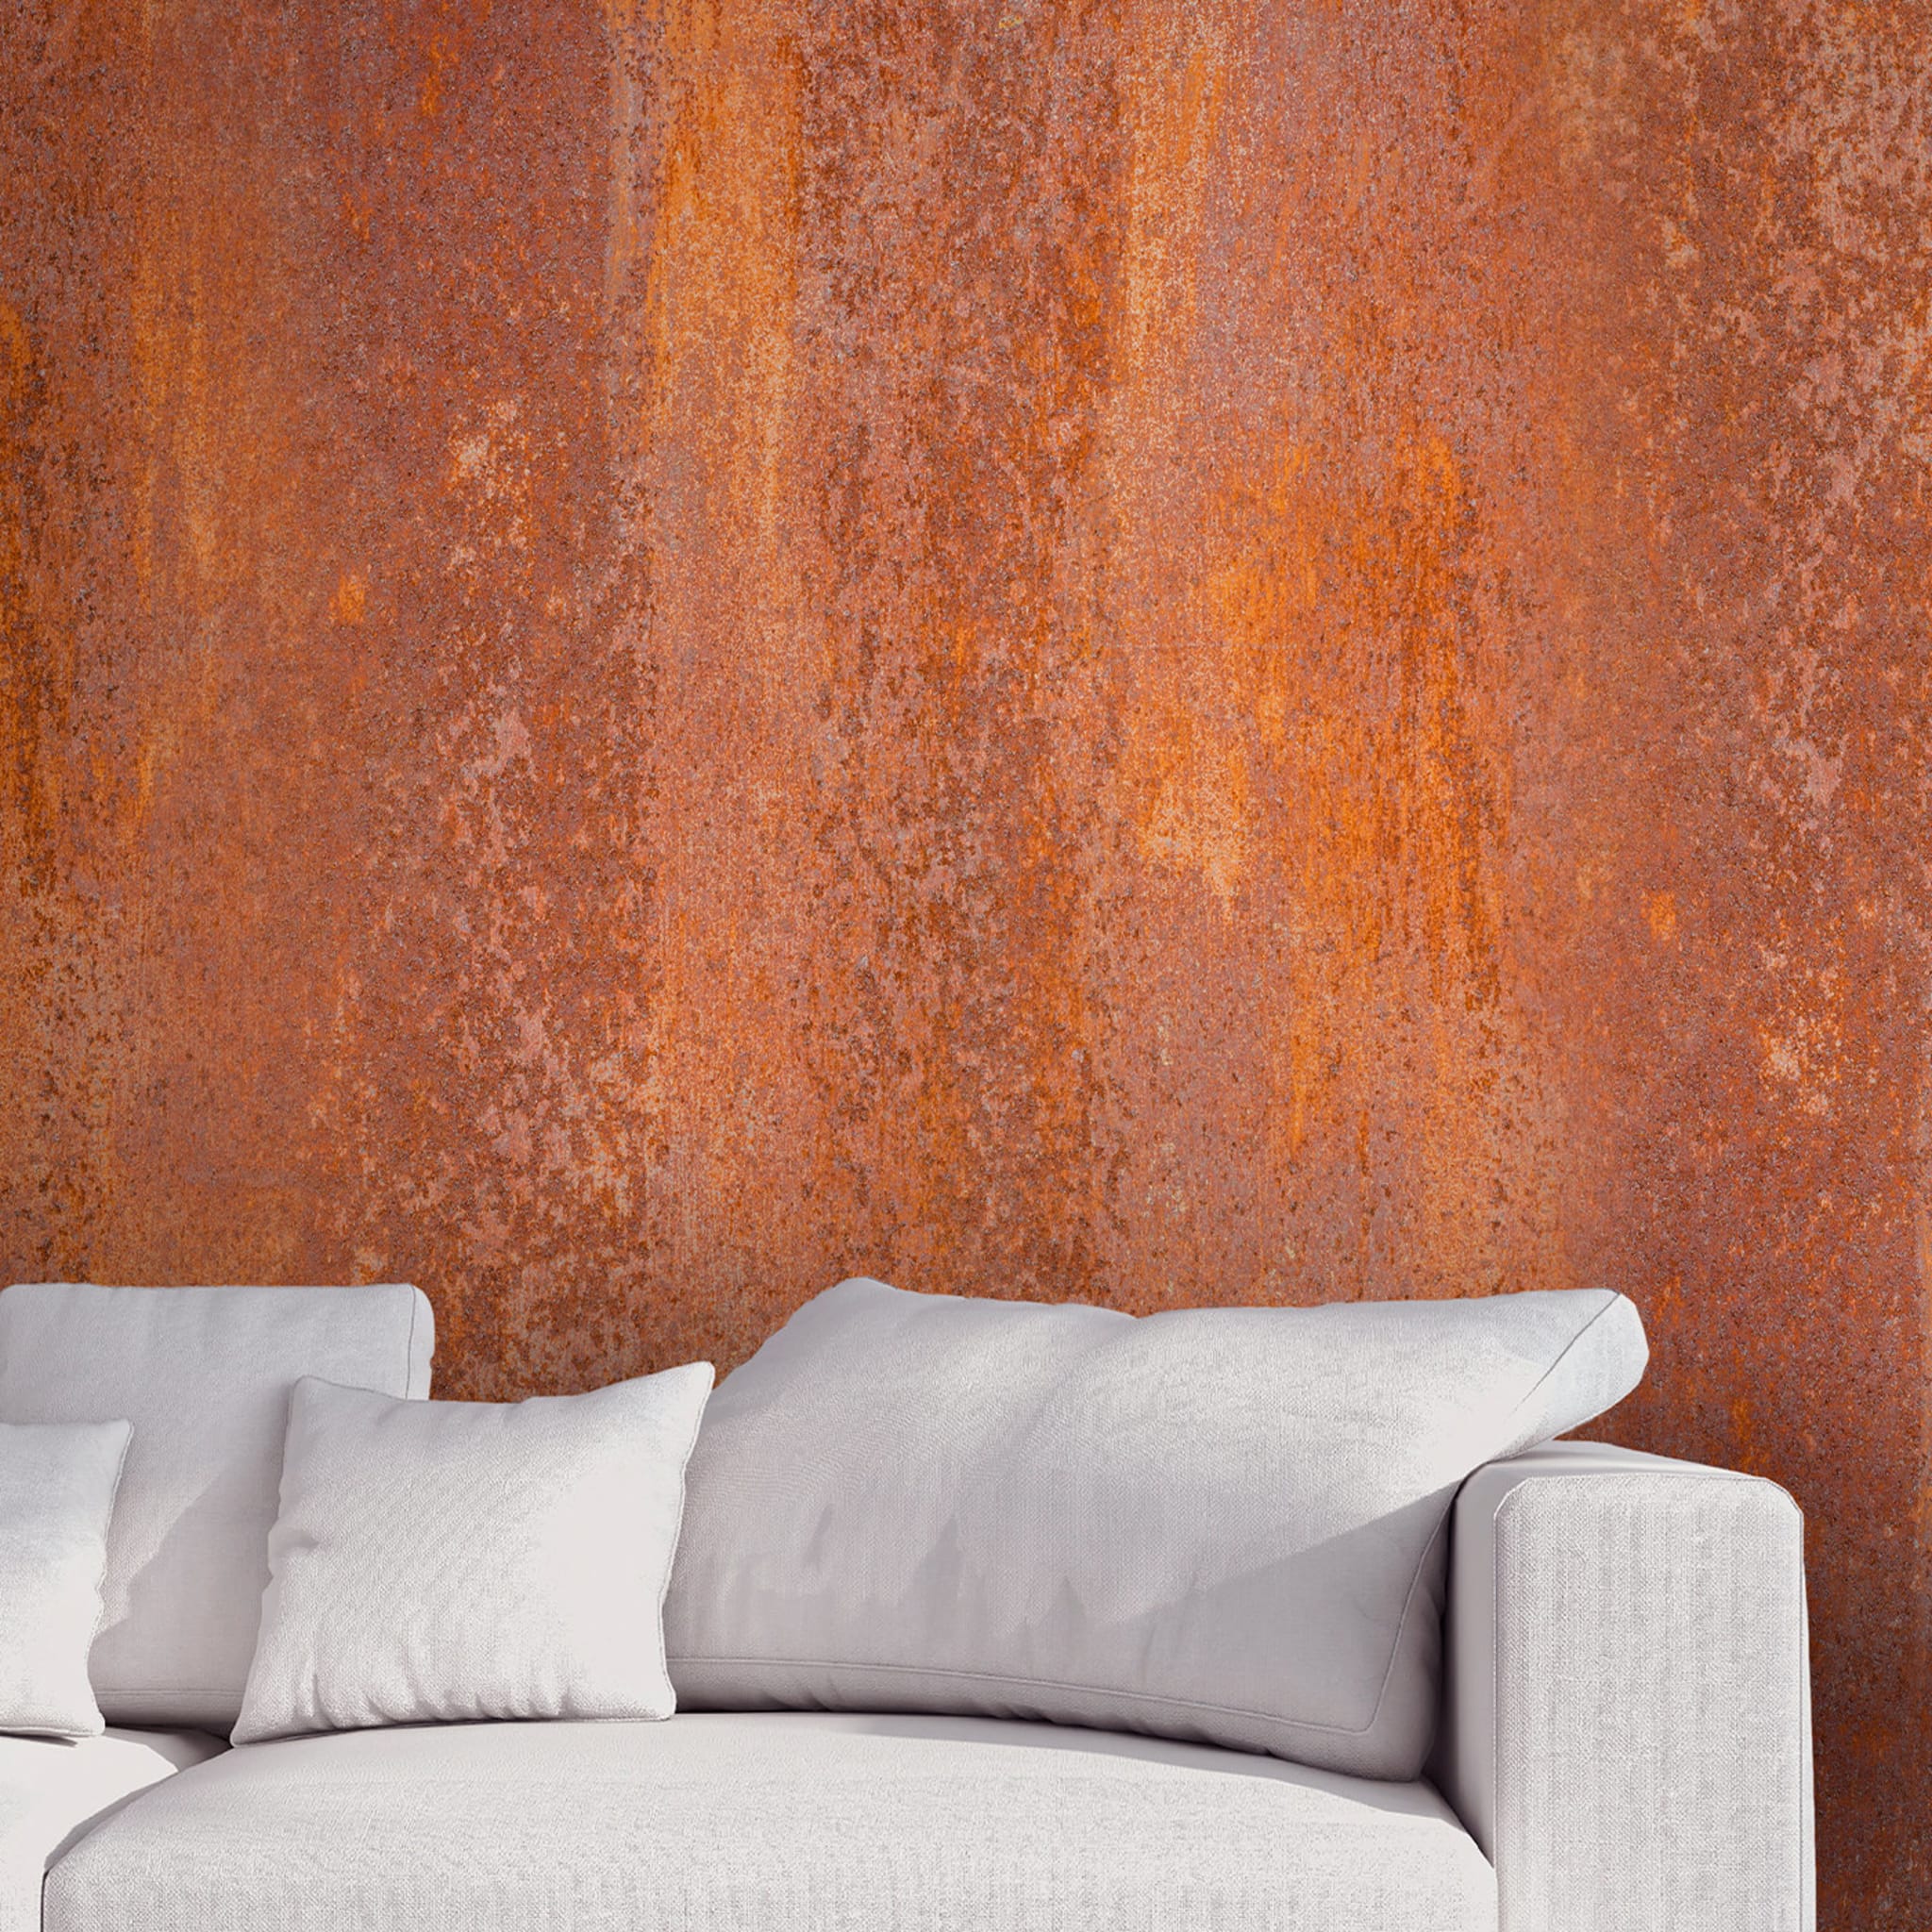 Orange Textured Wallpaper #3 - Alternative view 1